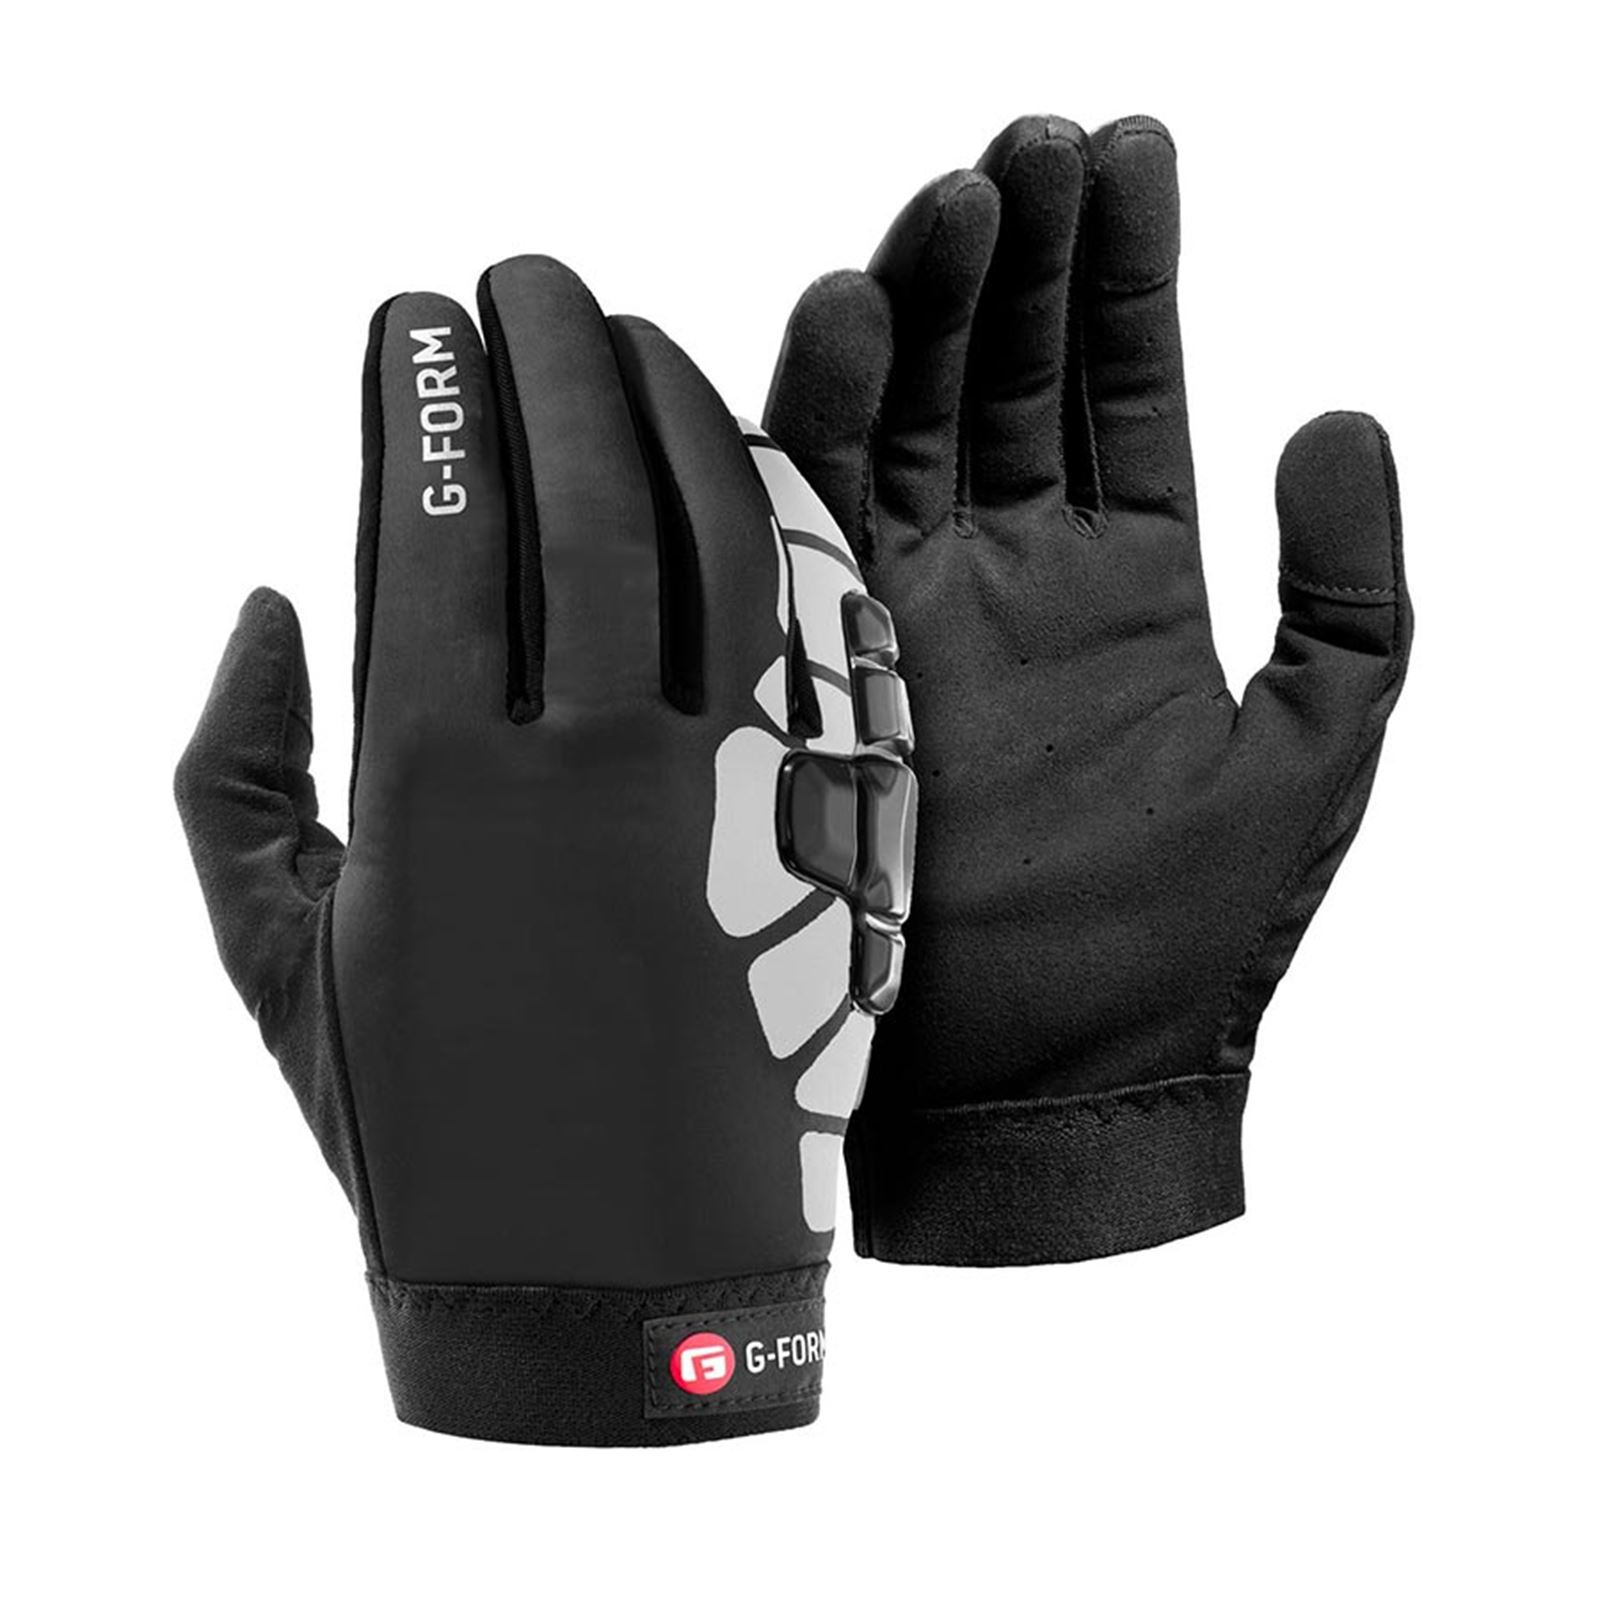 G-Form Bolle Winter Gloves - Black/White - 2XL